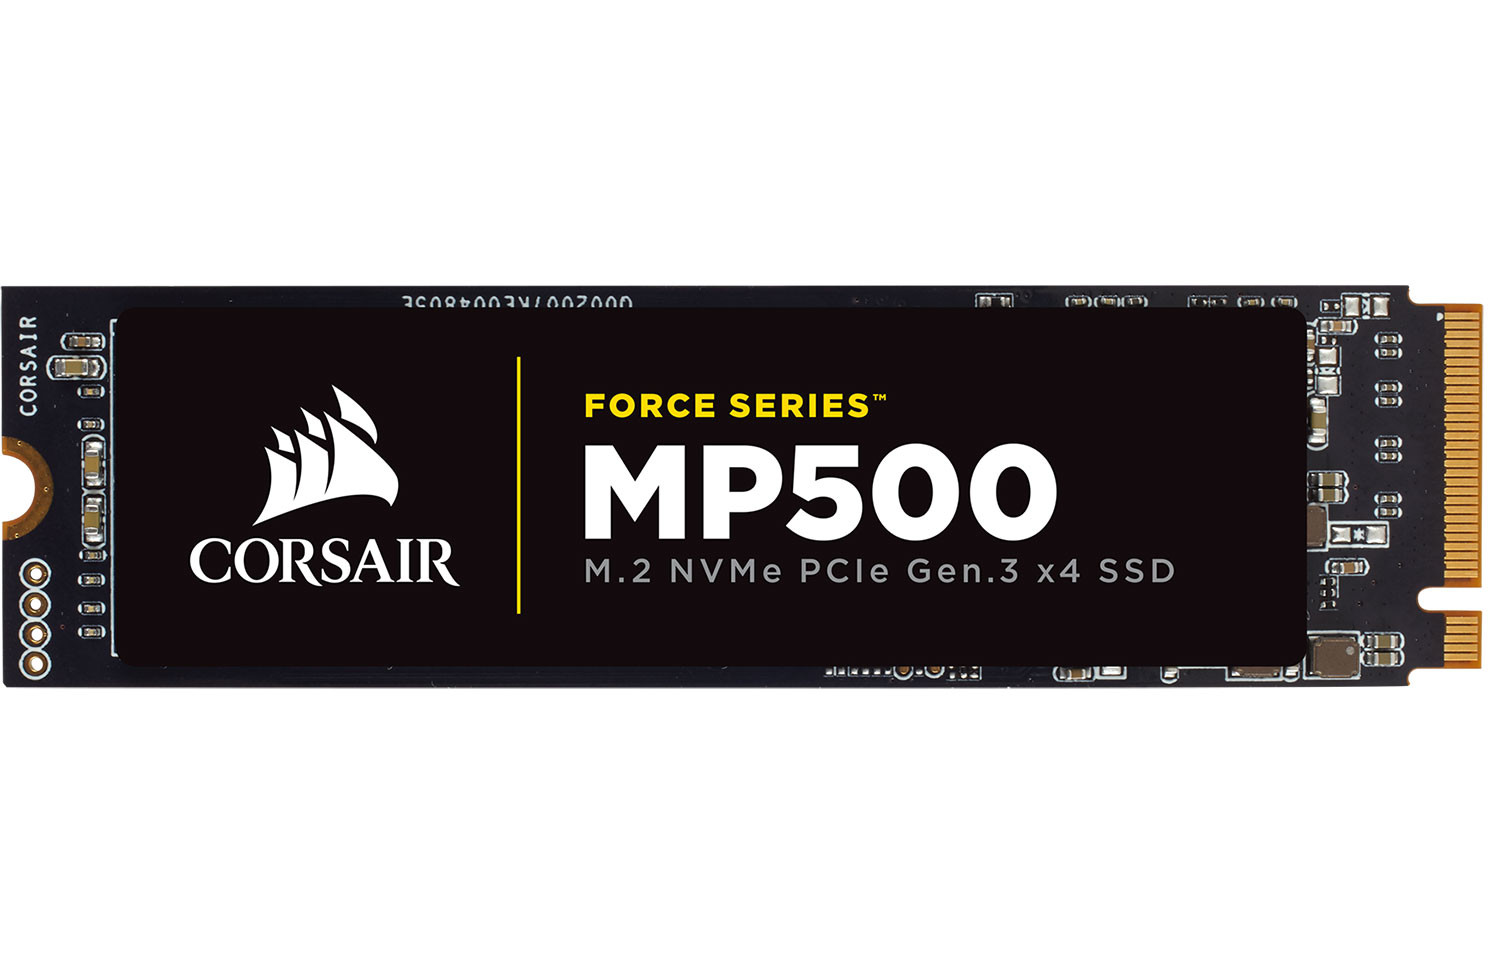 CORSAIR Unveils the Force Series M.2 NVMe PCIe SSDs | TechPowerUp Forums